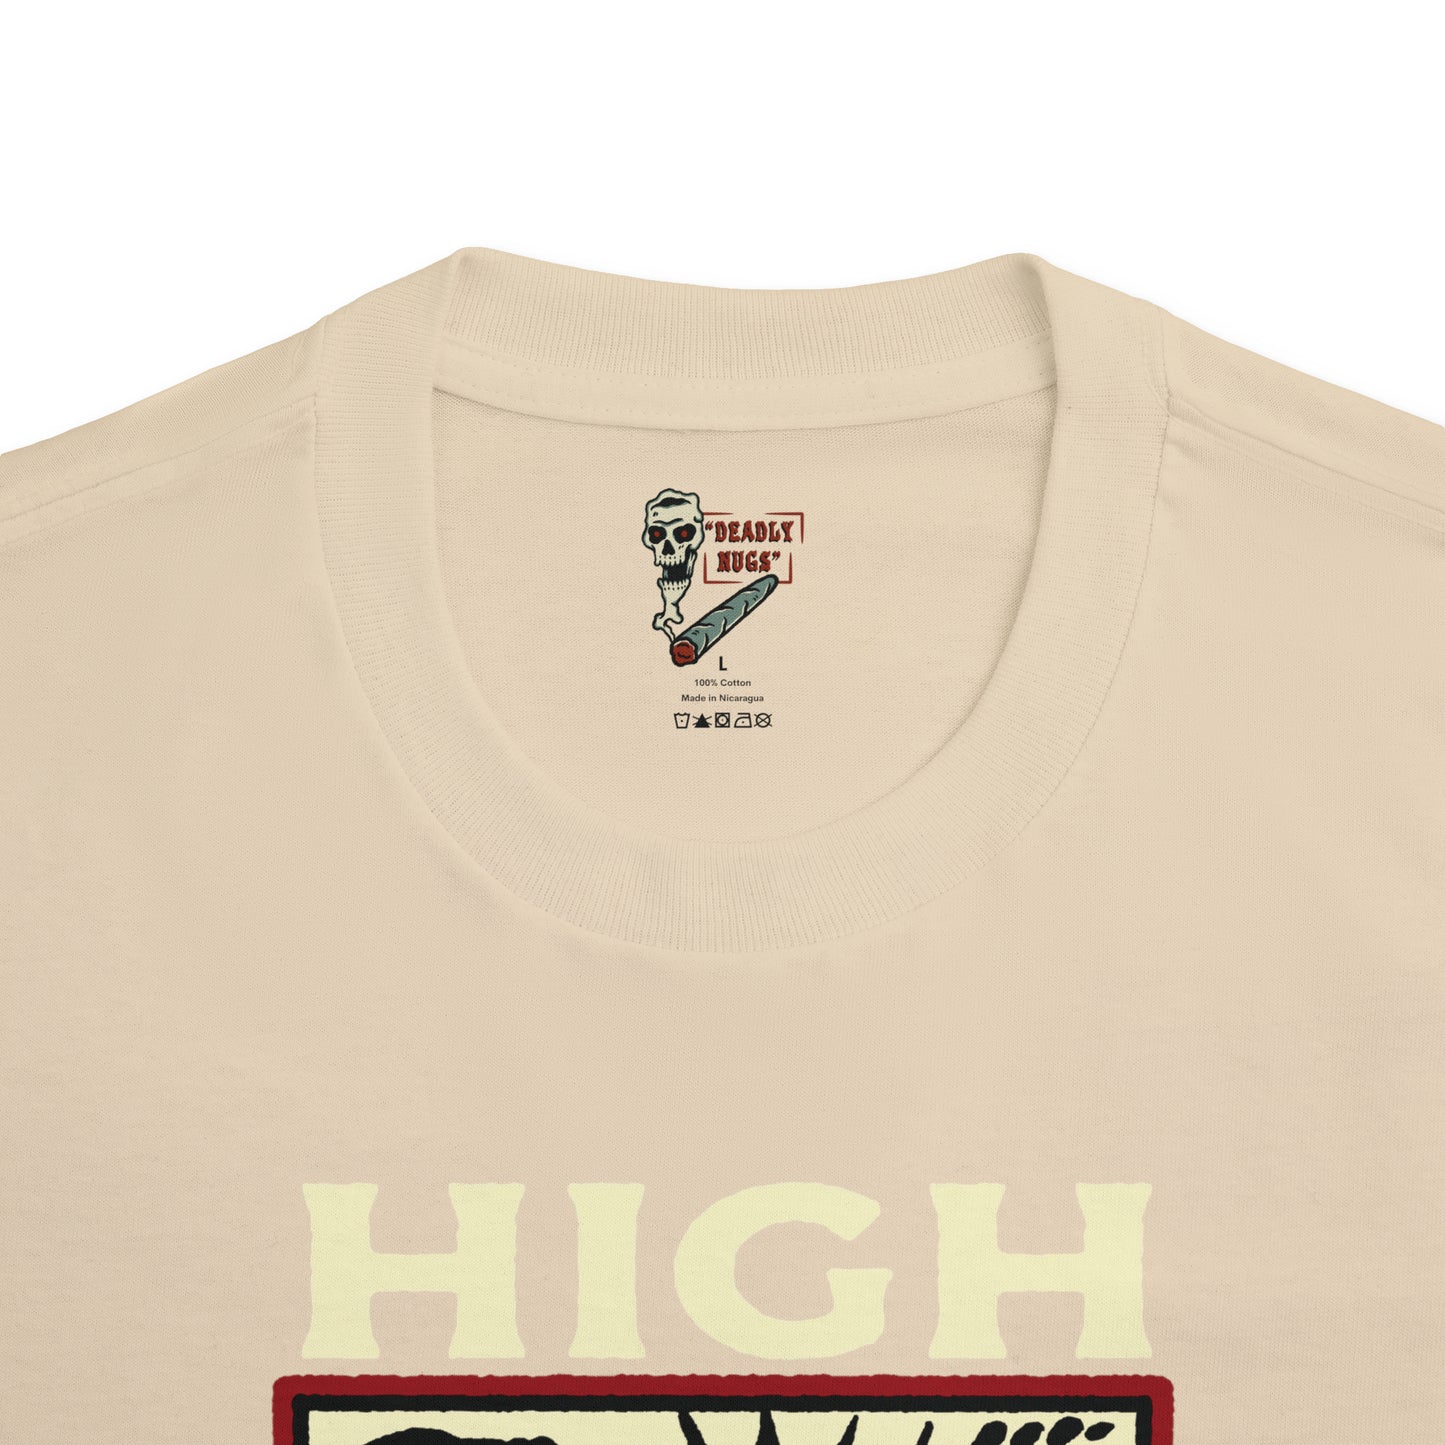 High Now T-Shirt